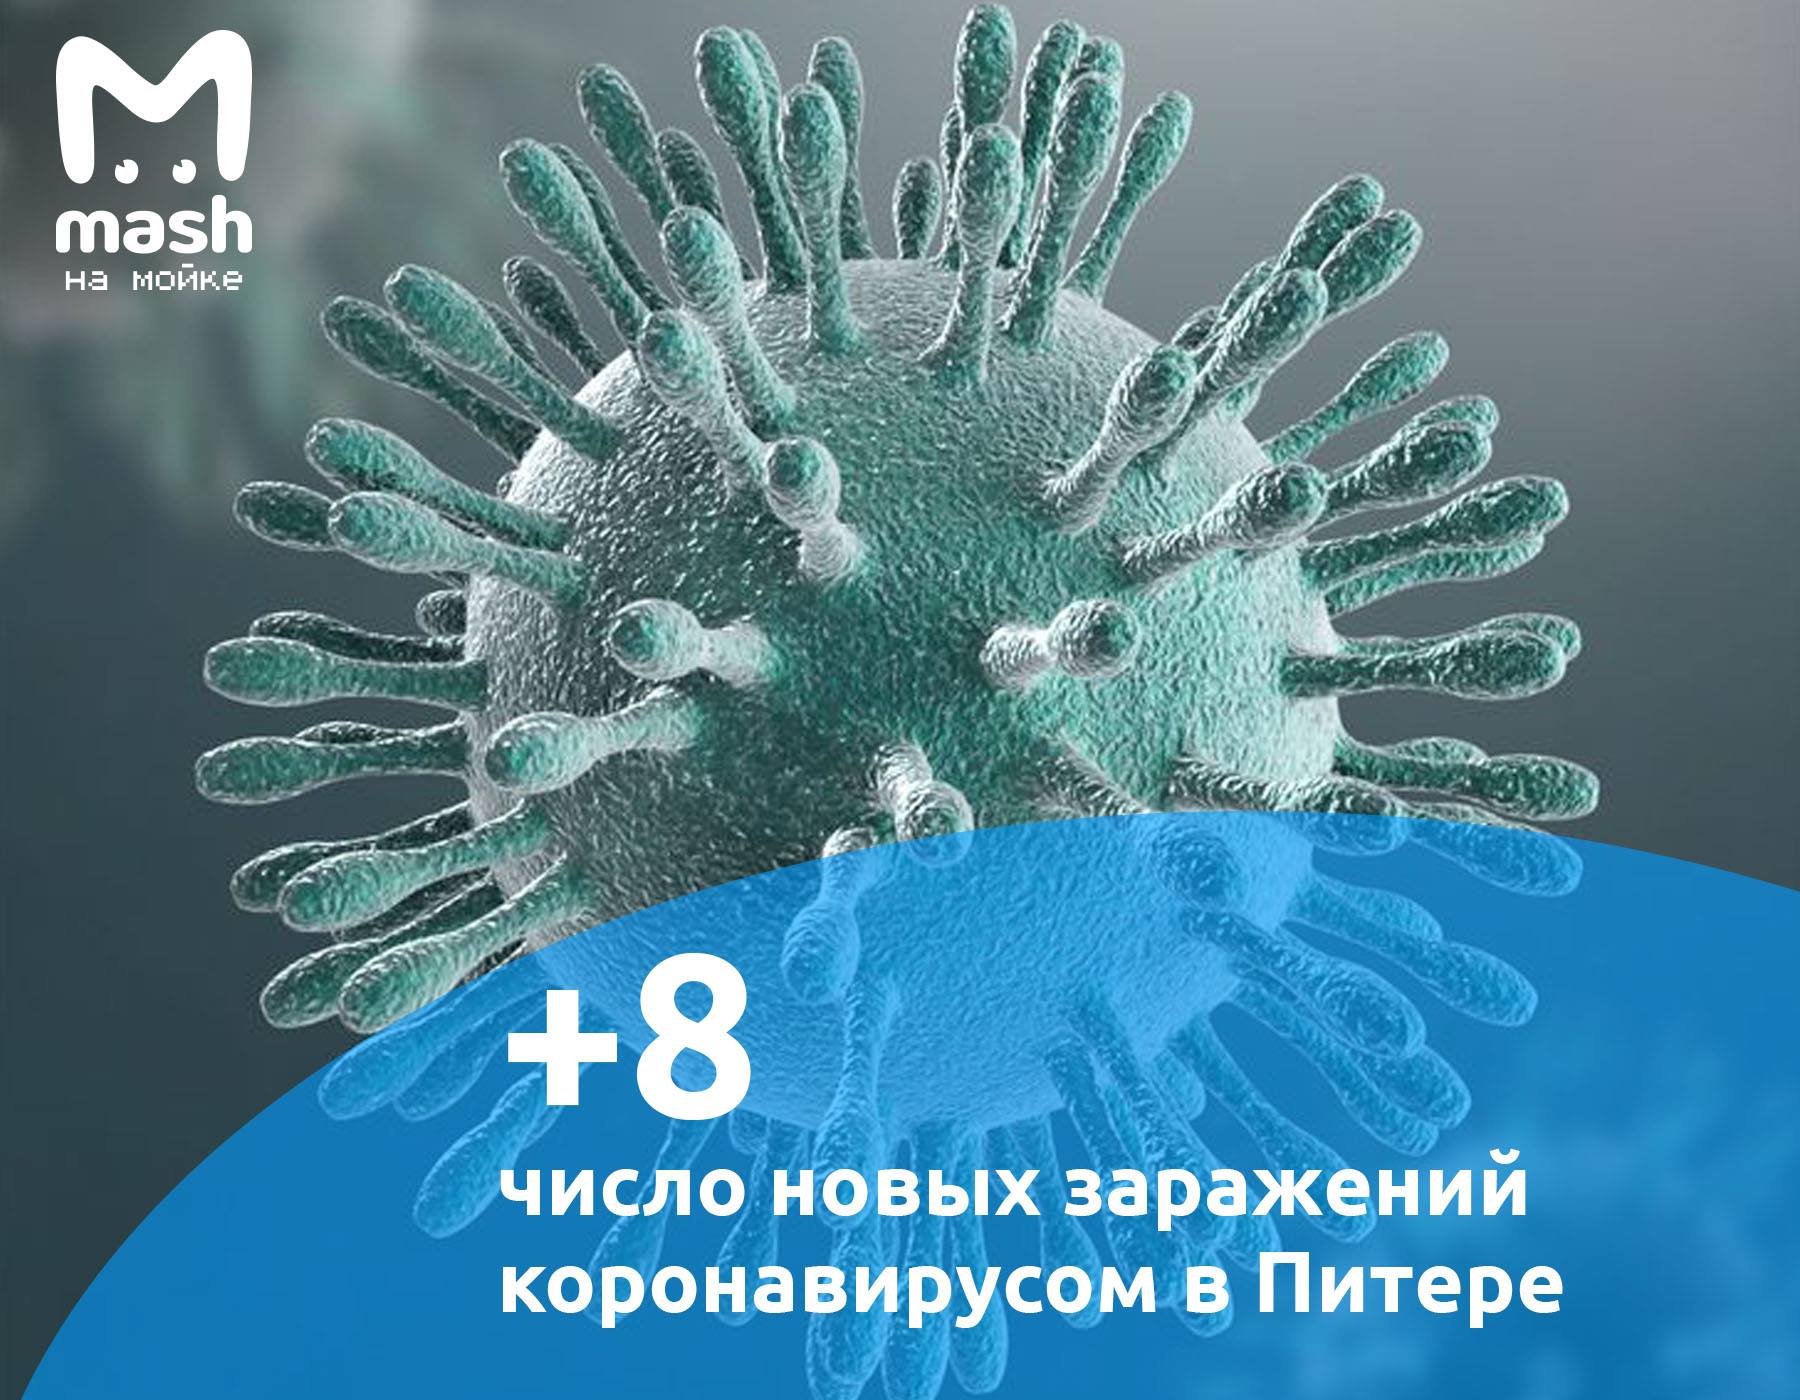 В Петербурге зафиксировали 8 новых случаев коронавируса